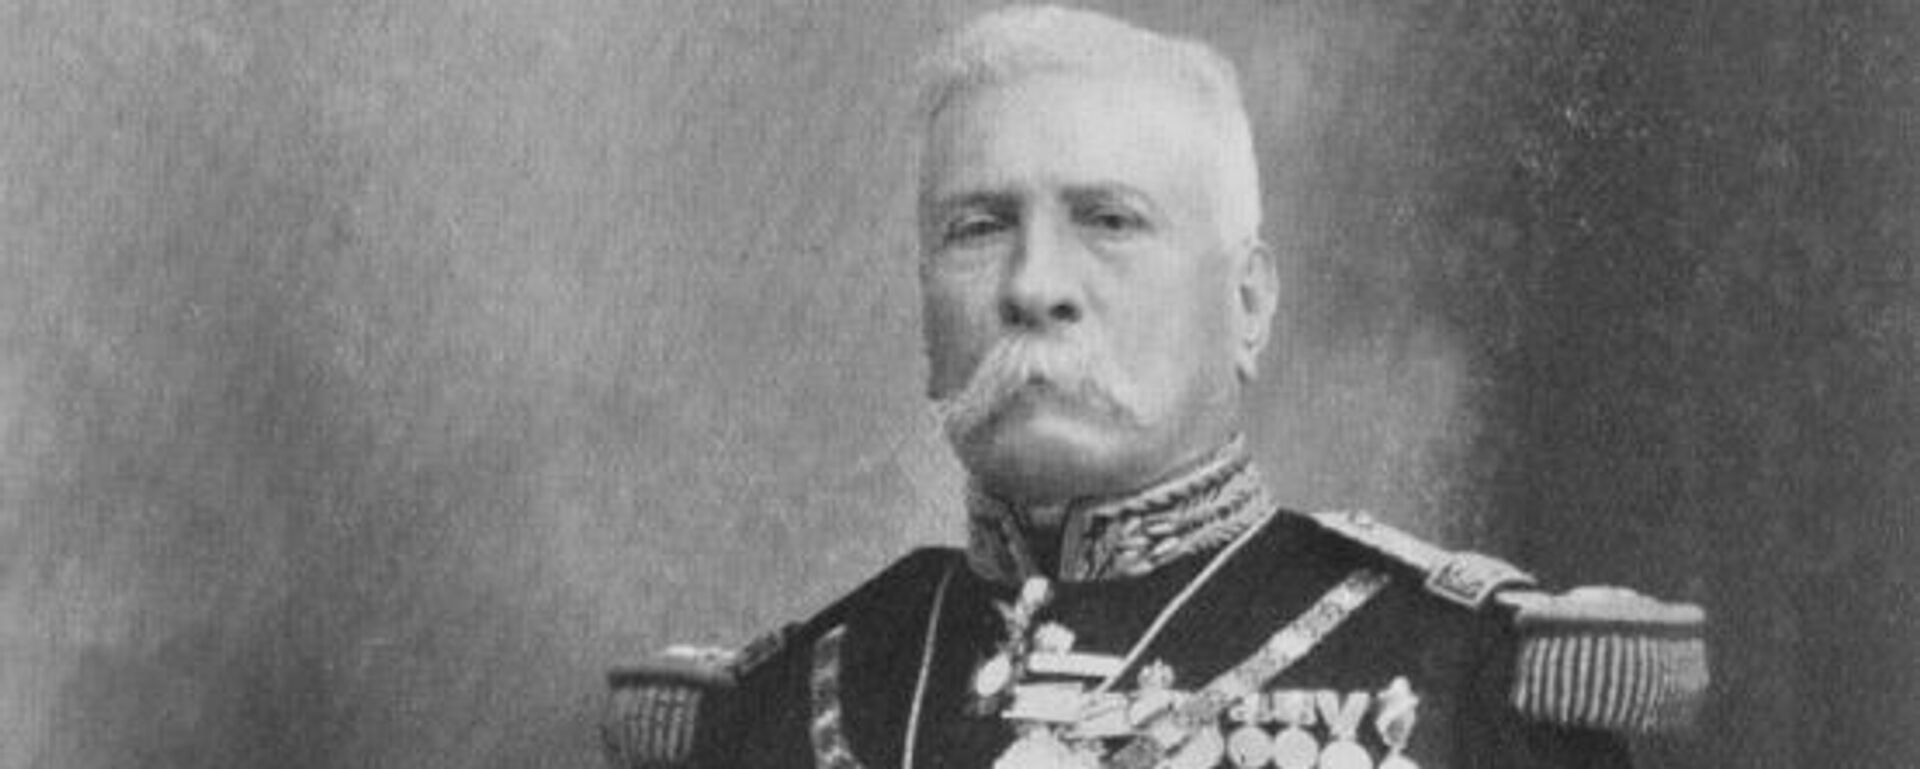 José de la Cruz Porfirio Díaz Mori,​ conocido como Porfirio Díaz, presidente de México que gobernó más de tres décadas - Sputnik Mundo, 1920, 11.02.2021